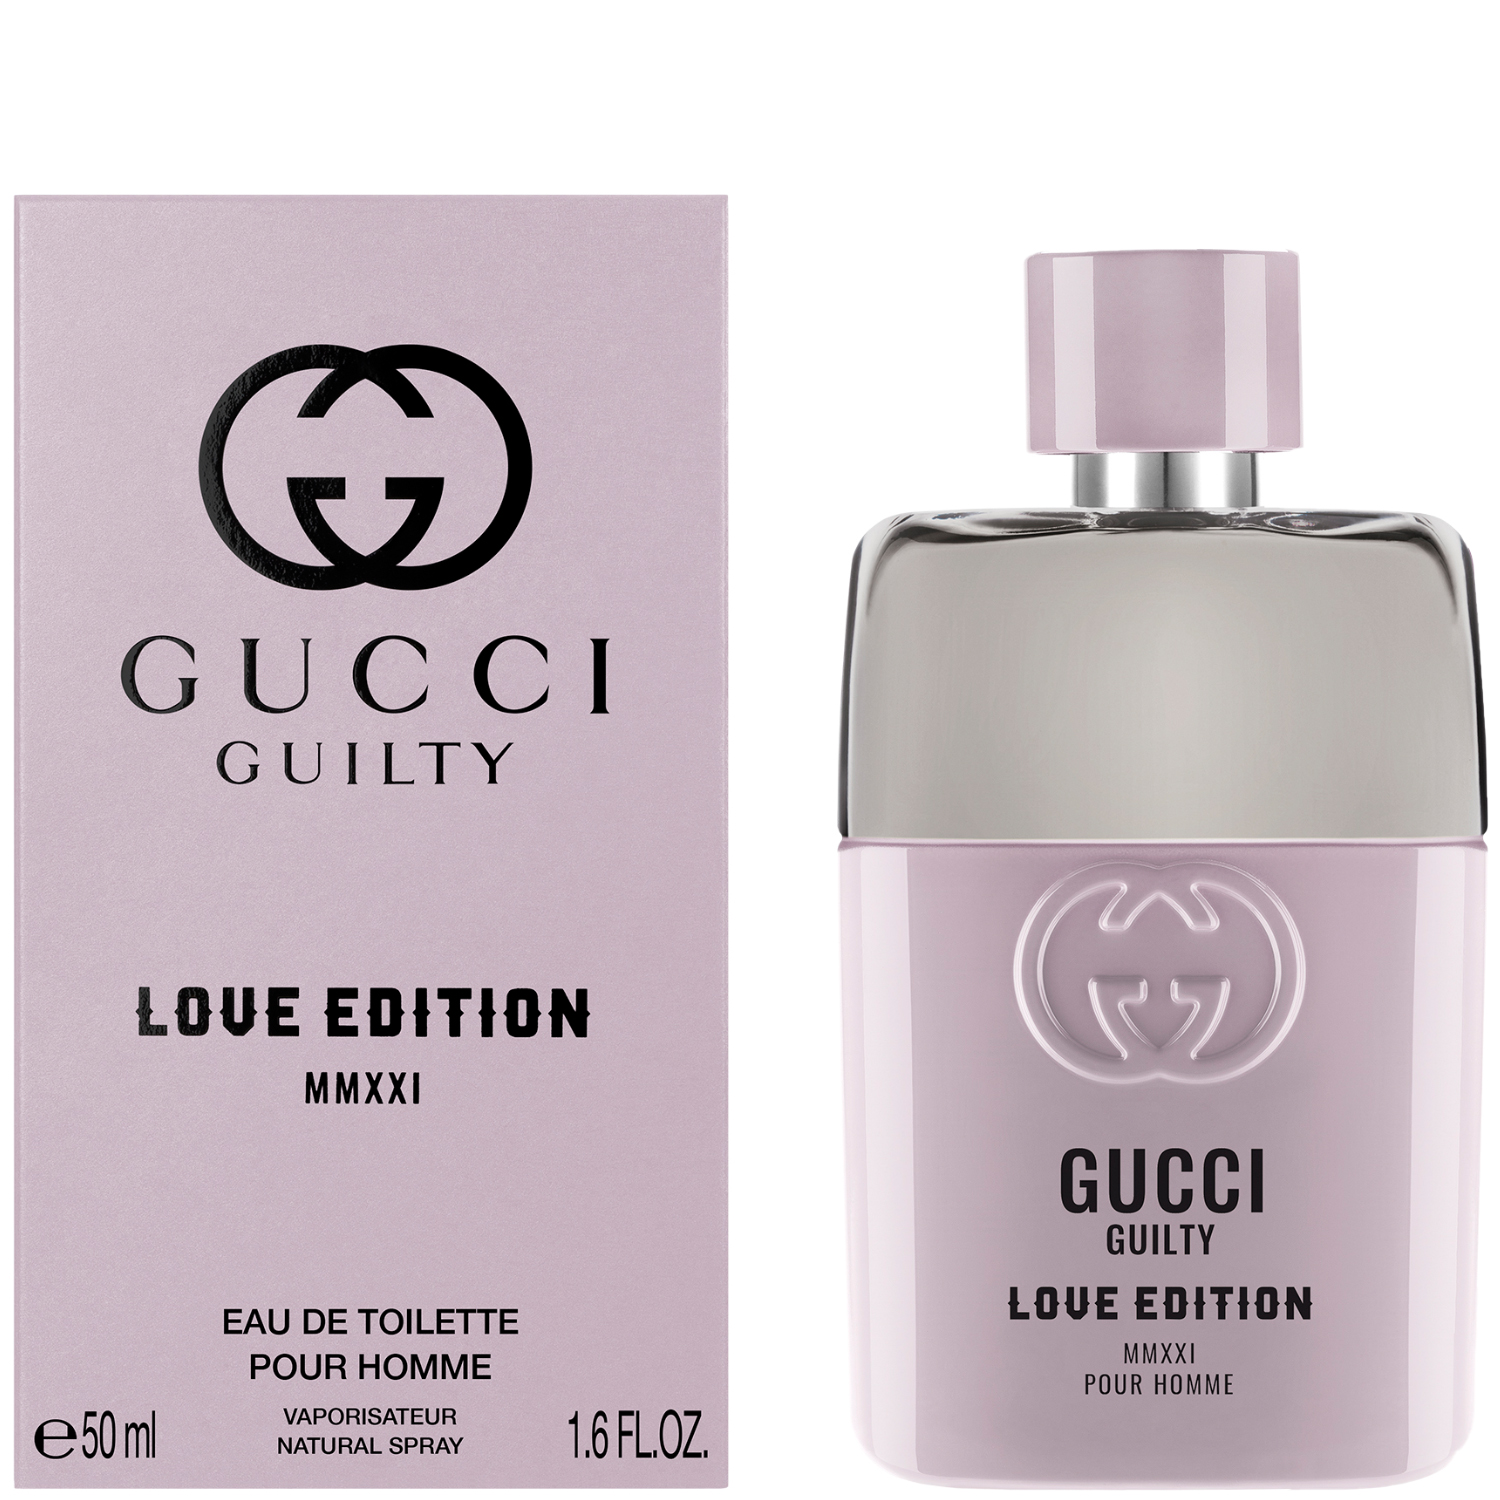 Gucci Guilty Pour Homme Love Edition MMXXI Eau de Toilette 50ml